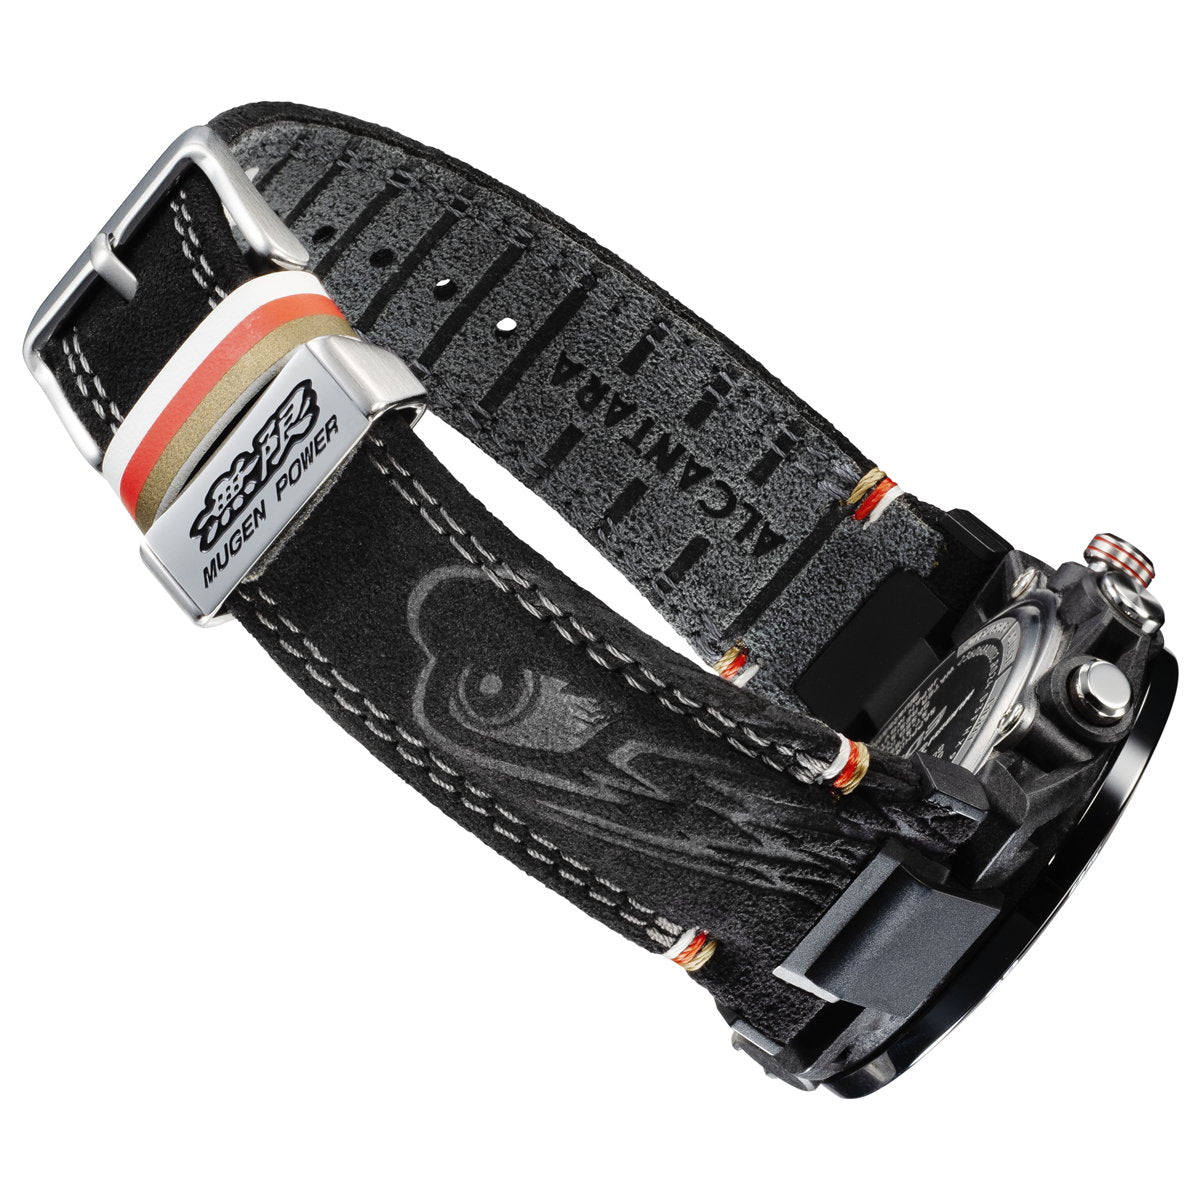 カシオ エディフィス CASIO EDIFICE MUGEN EDITION 限定モデル 腕時計 メンズ クロノグラフ ECB-40MU-1AJR 無限 スマートフォンリンク